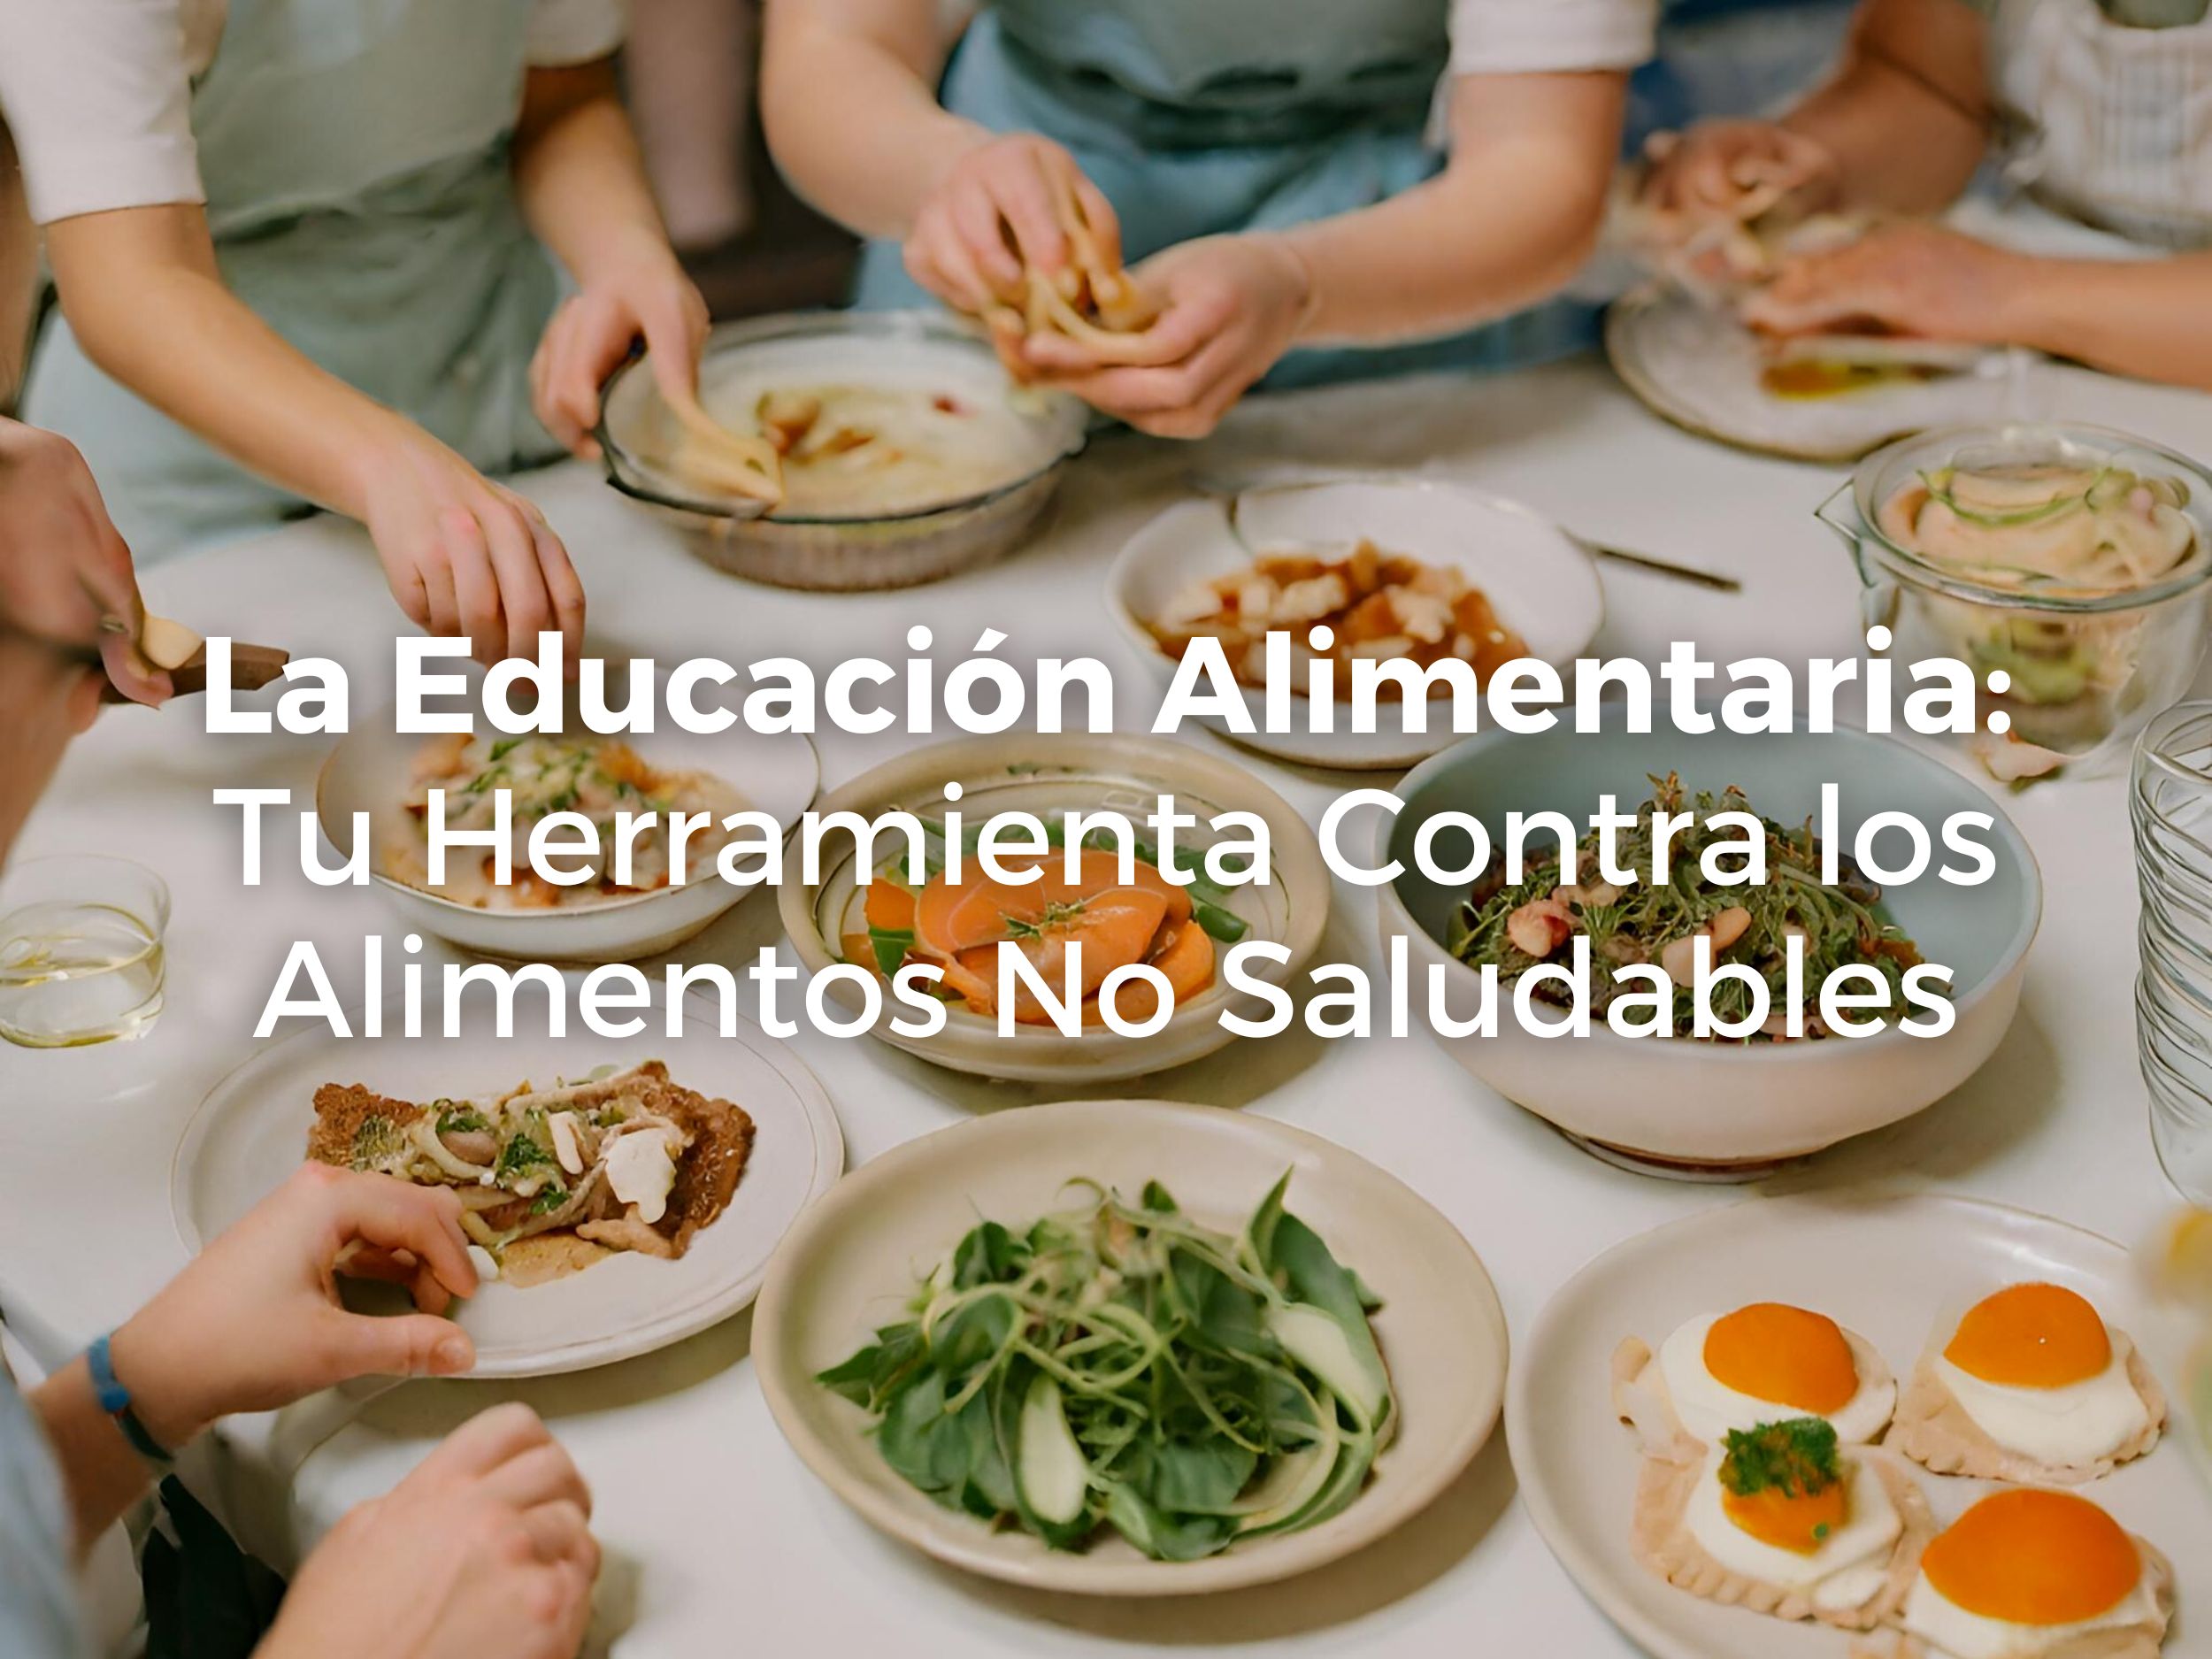 La Educación Alimentaria: Tu Herramienta Contra los Alimentos No Saludables